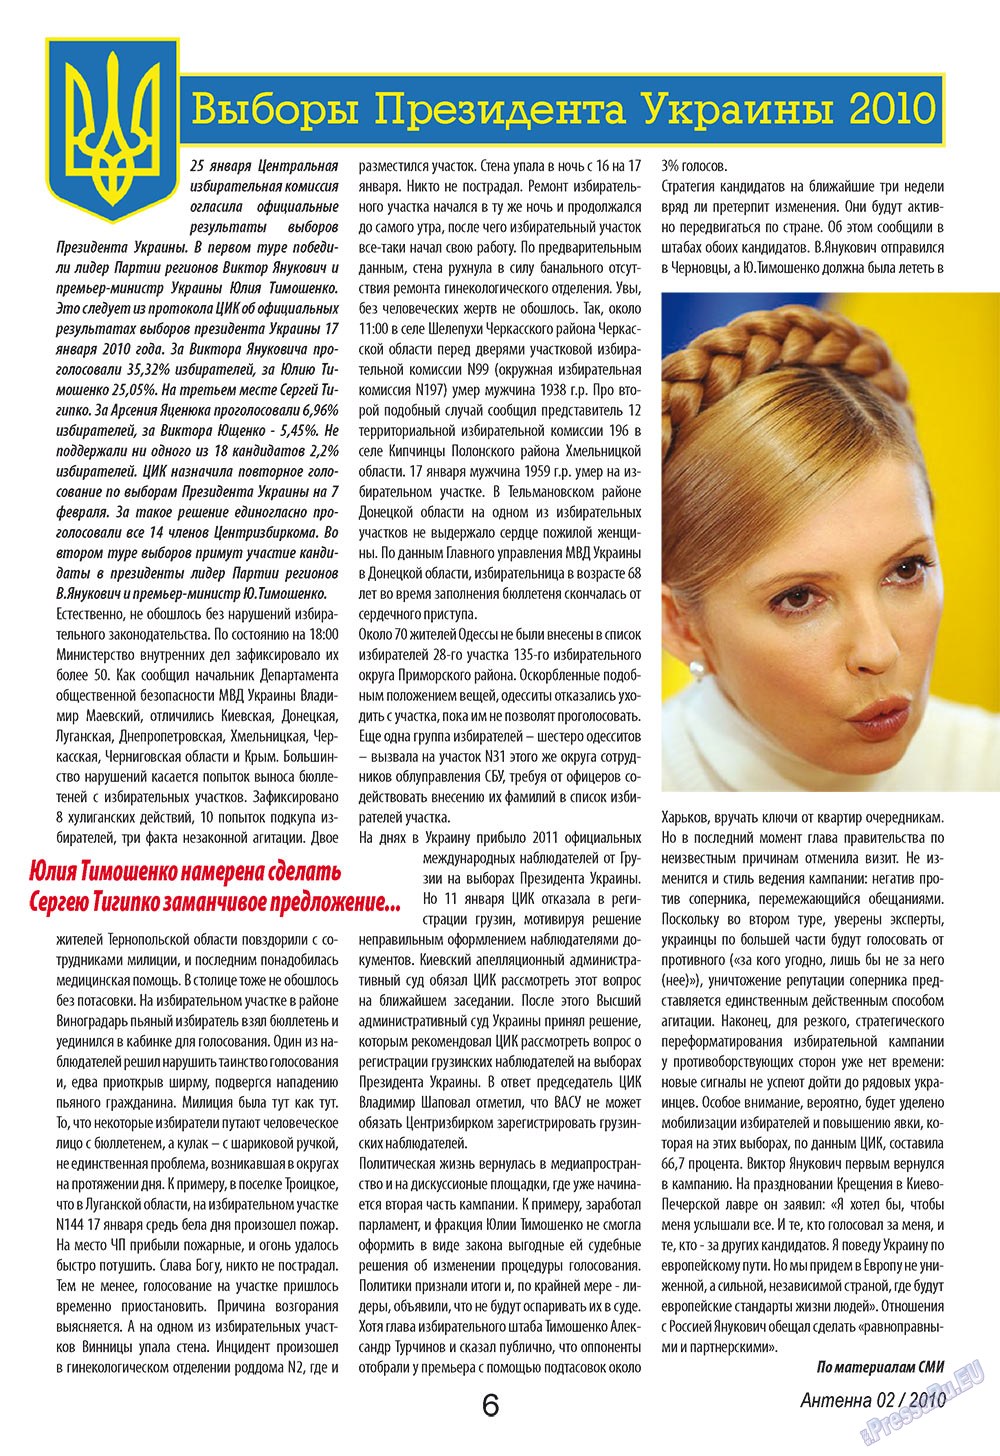 Антенна, журнал. 2010 №2 стр.6